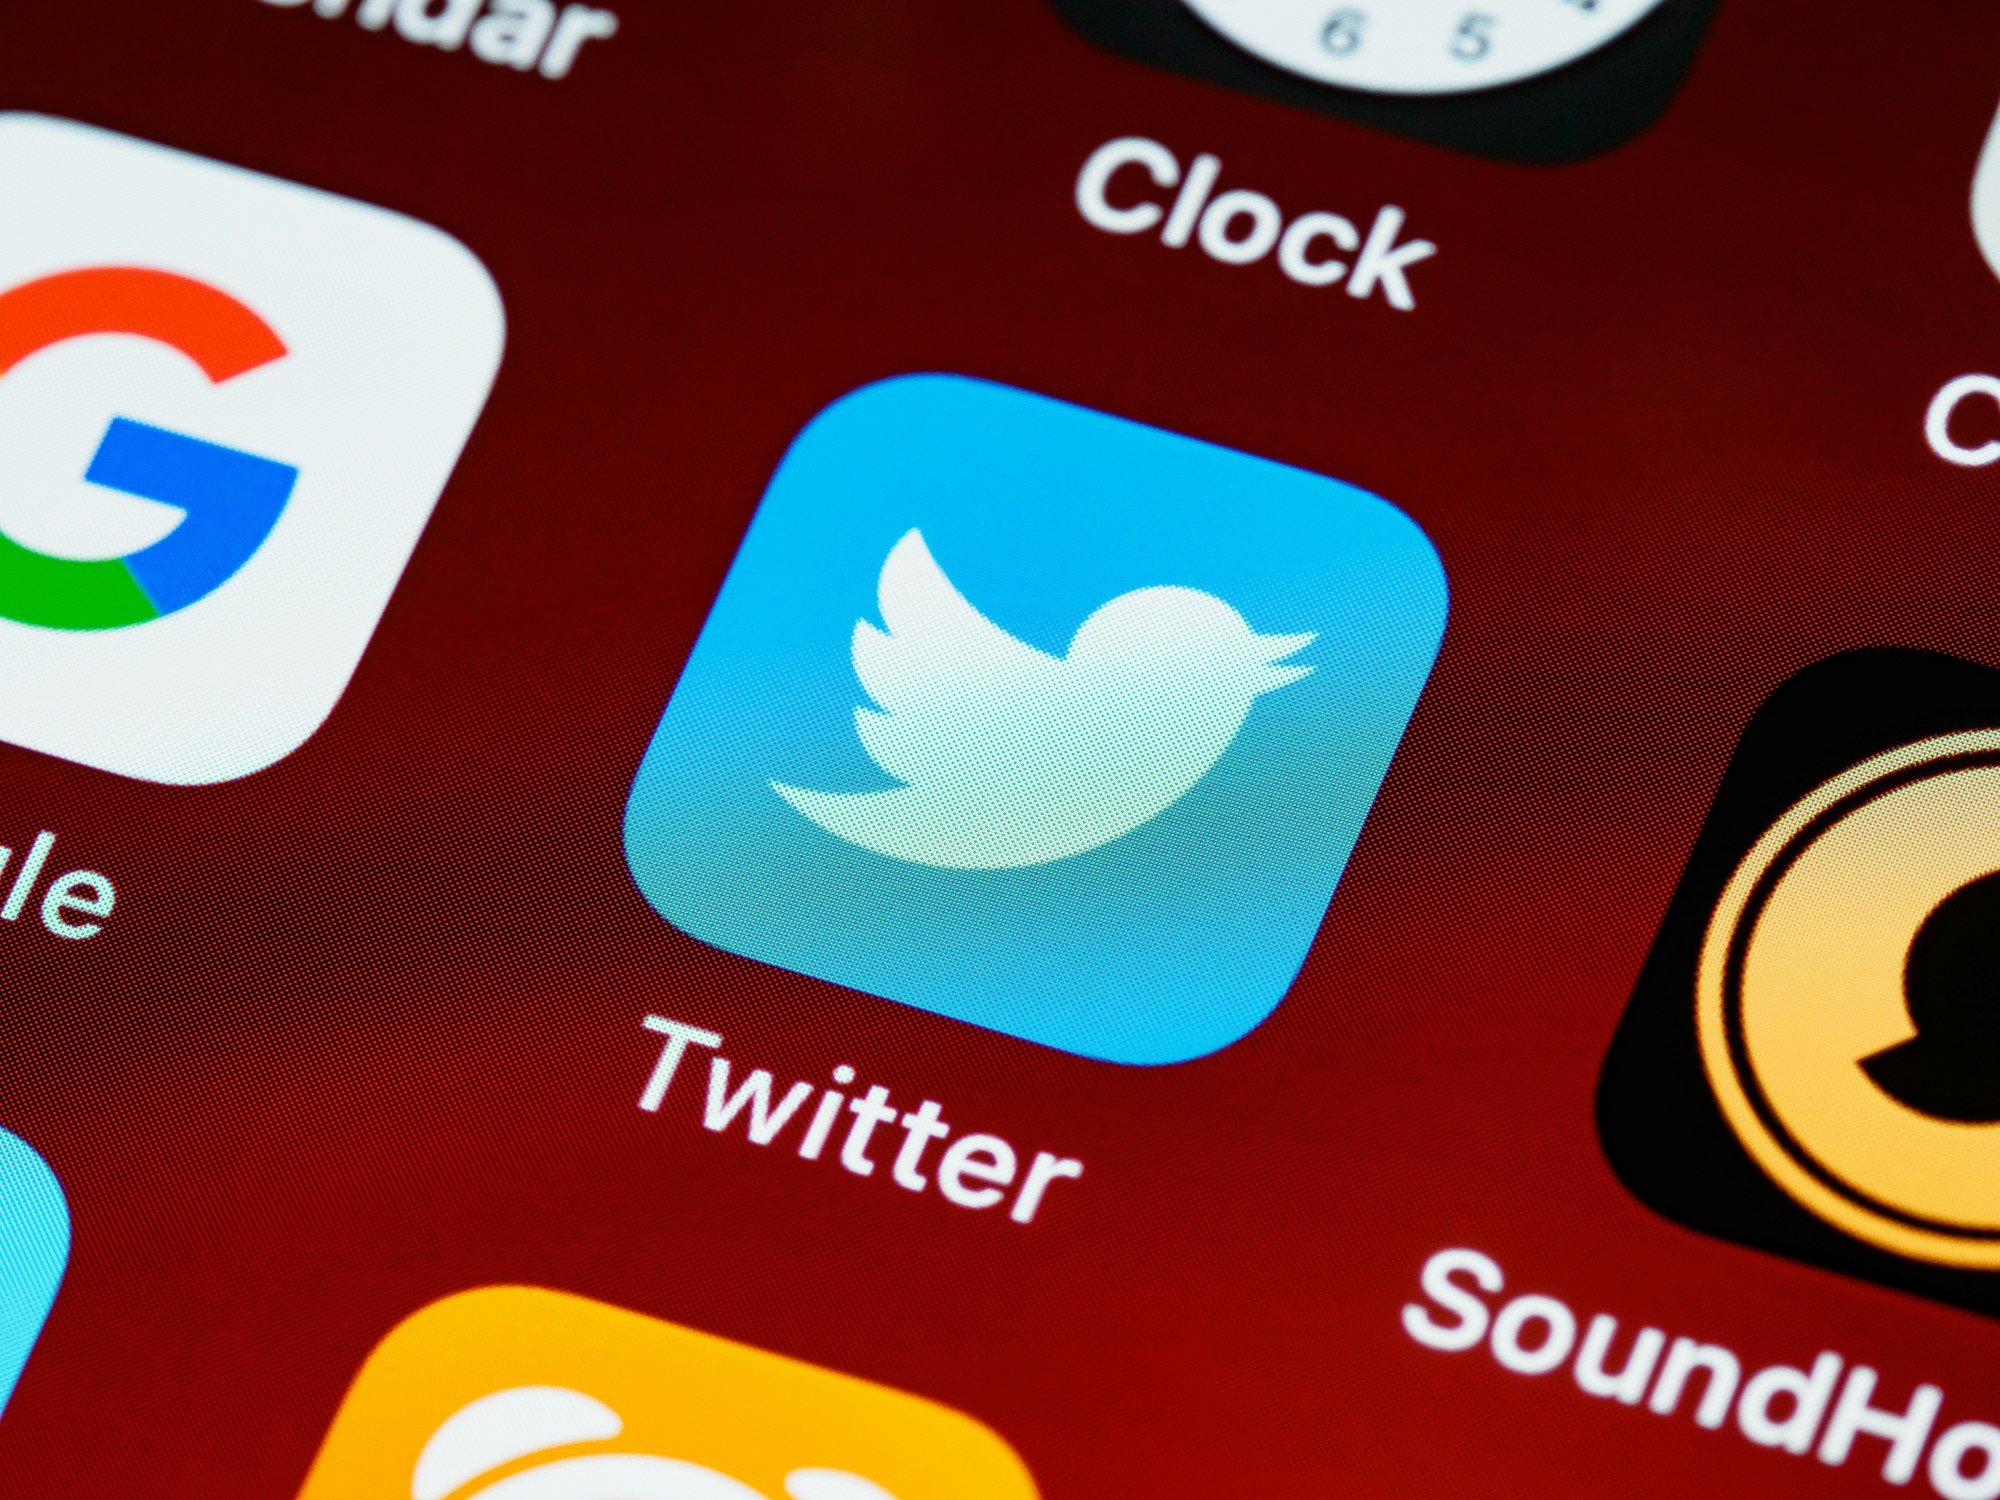 Contas verificadas (pagas) do Twitter Blue terão prioridade na timeline